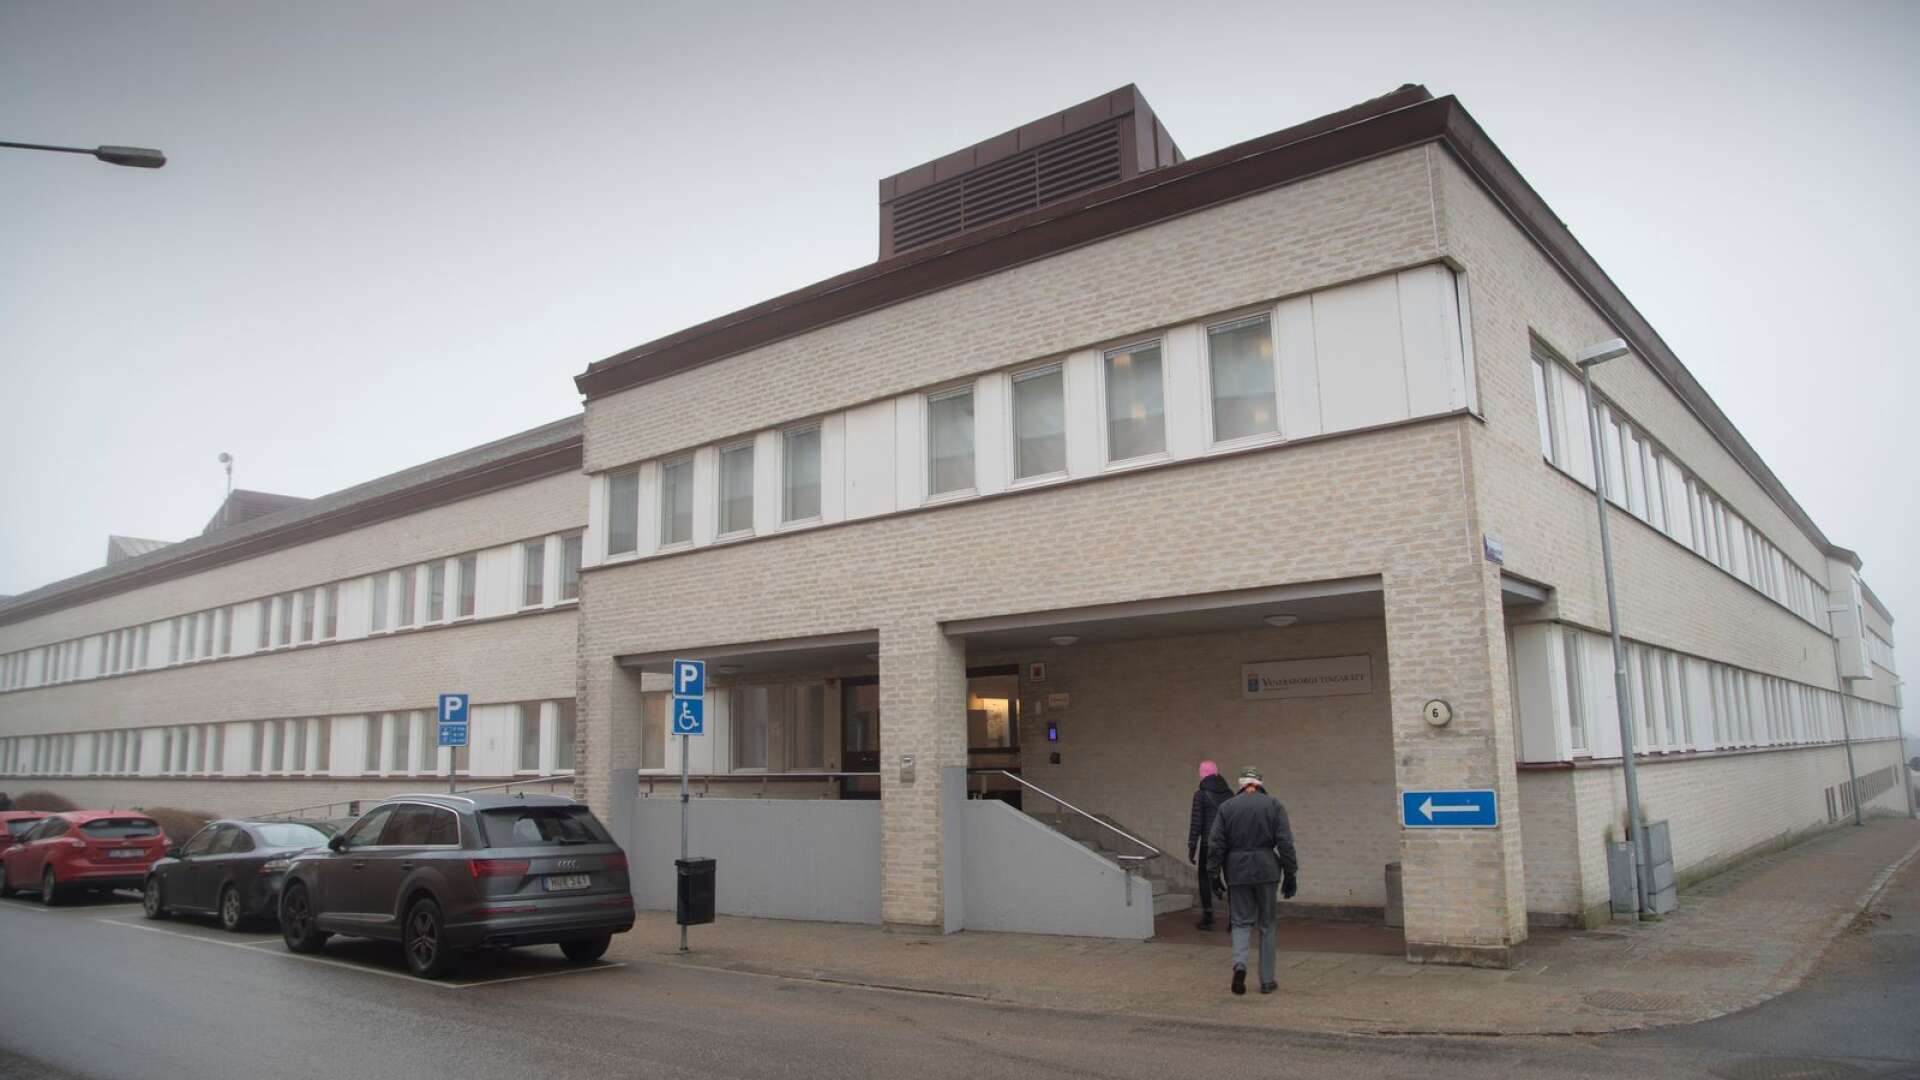 Åmålsbon som knivhögg en man i en lägenhet i centrala Åmål i november, dömdes till rättspsykiatrisk vård. Domen föll på fredagseftermiddagen.